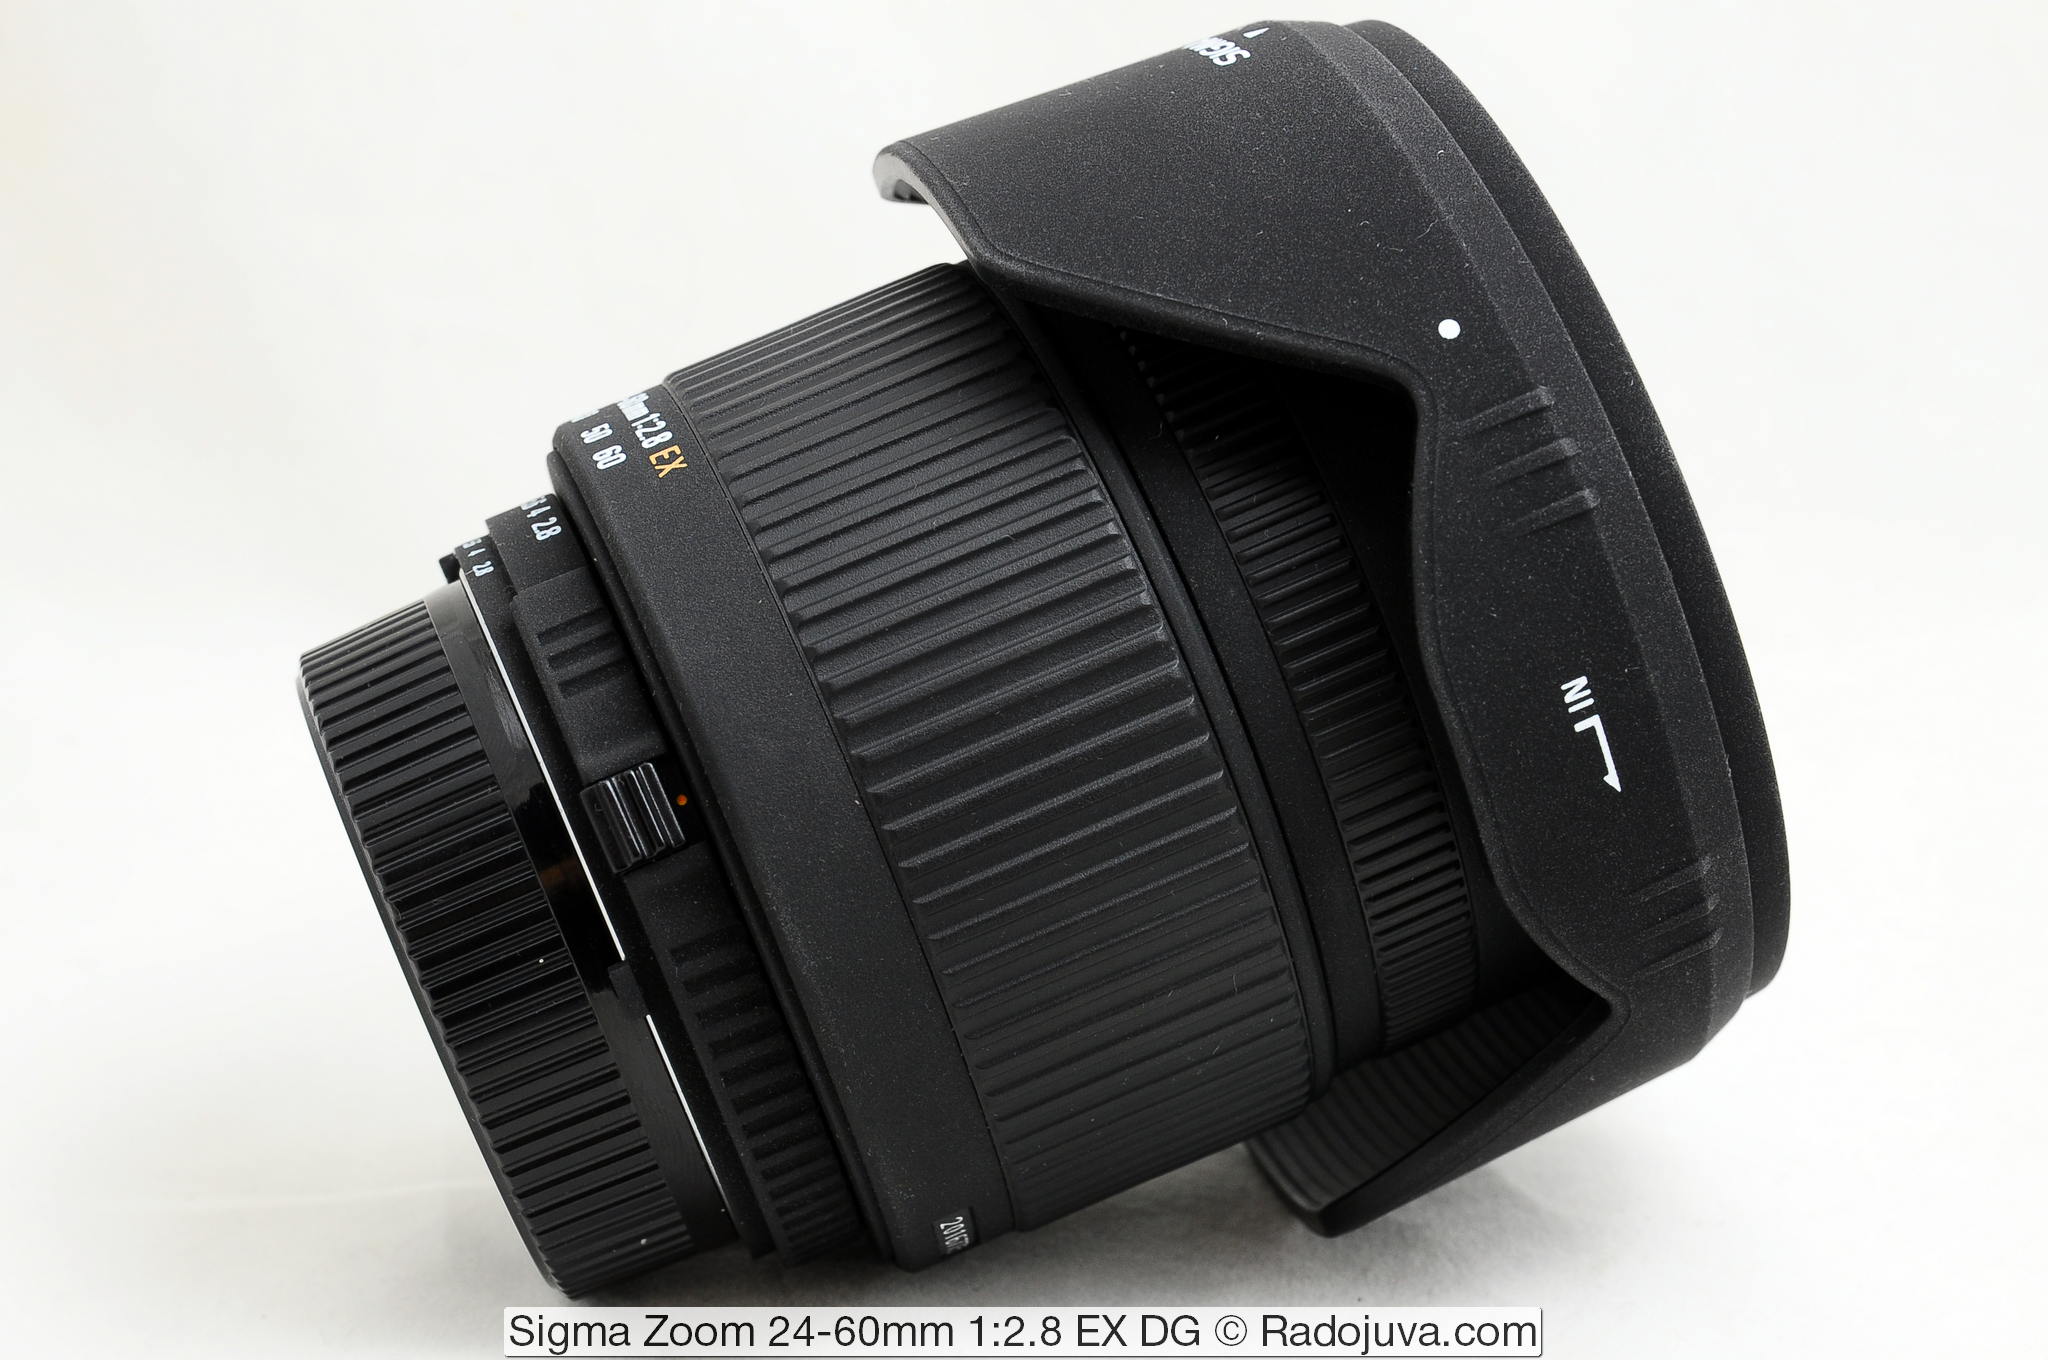 Sigma Zoom 24-60mm 1: 2.8 EX DG